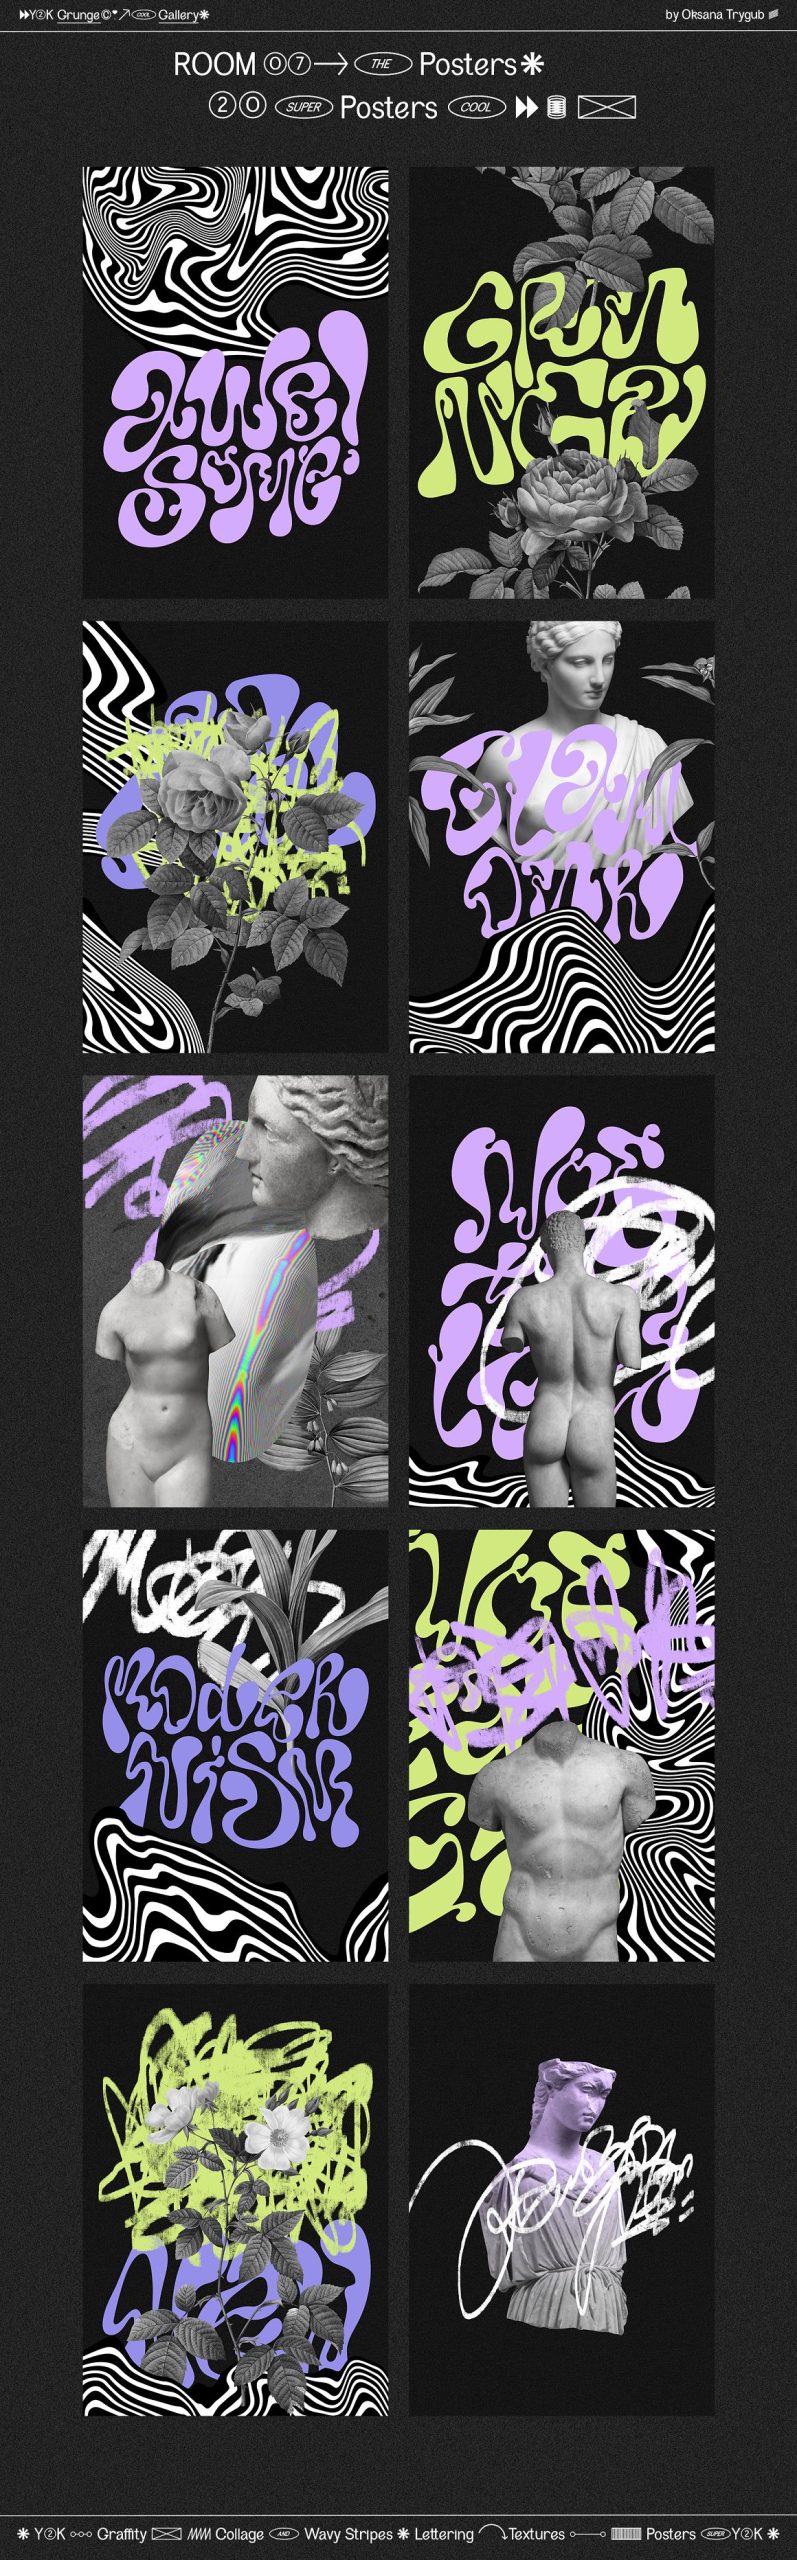 千禧涂鸦垃圾美学Y2K涂鸦迷幻拼贴艺术波浪条纹背景形状素材包 Grunge Gallery: Graffiti Collage（8923）图层云